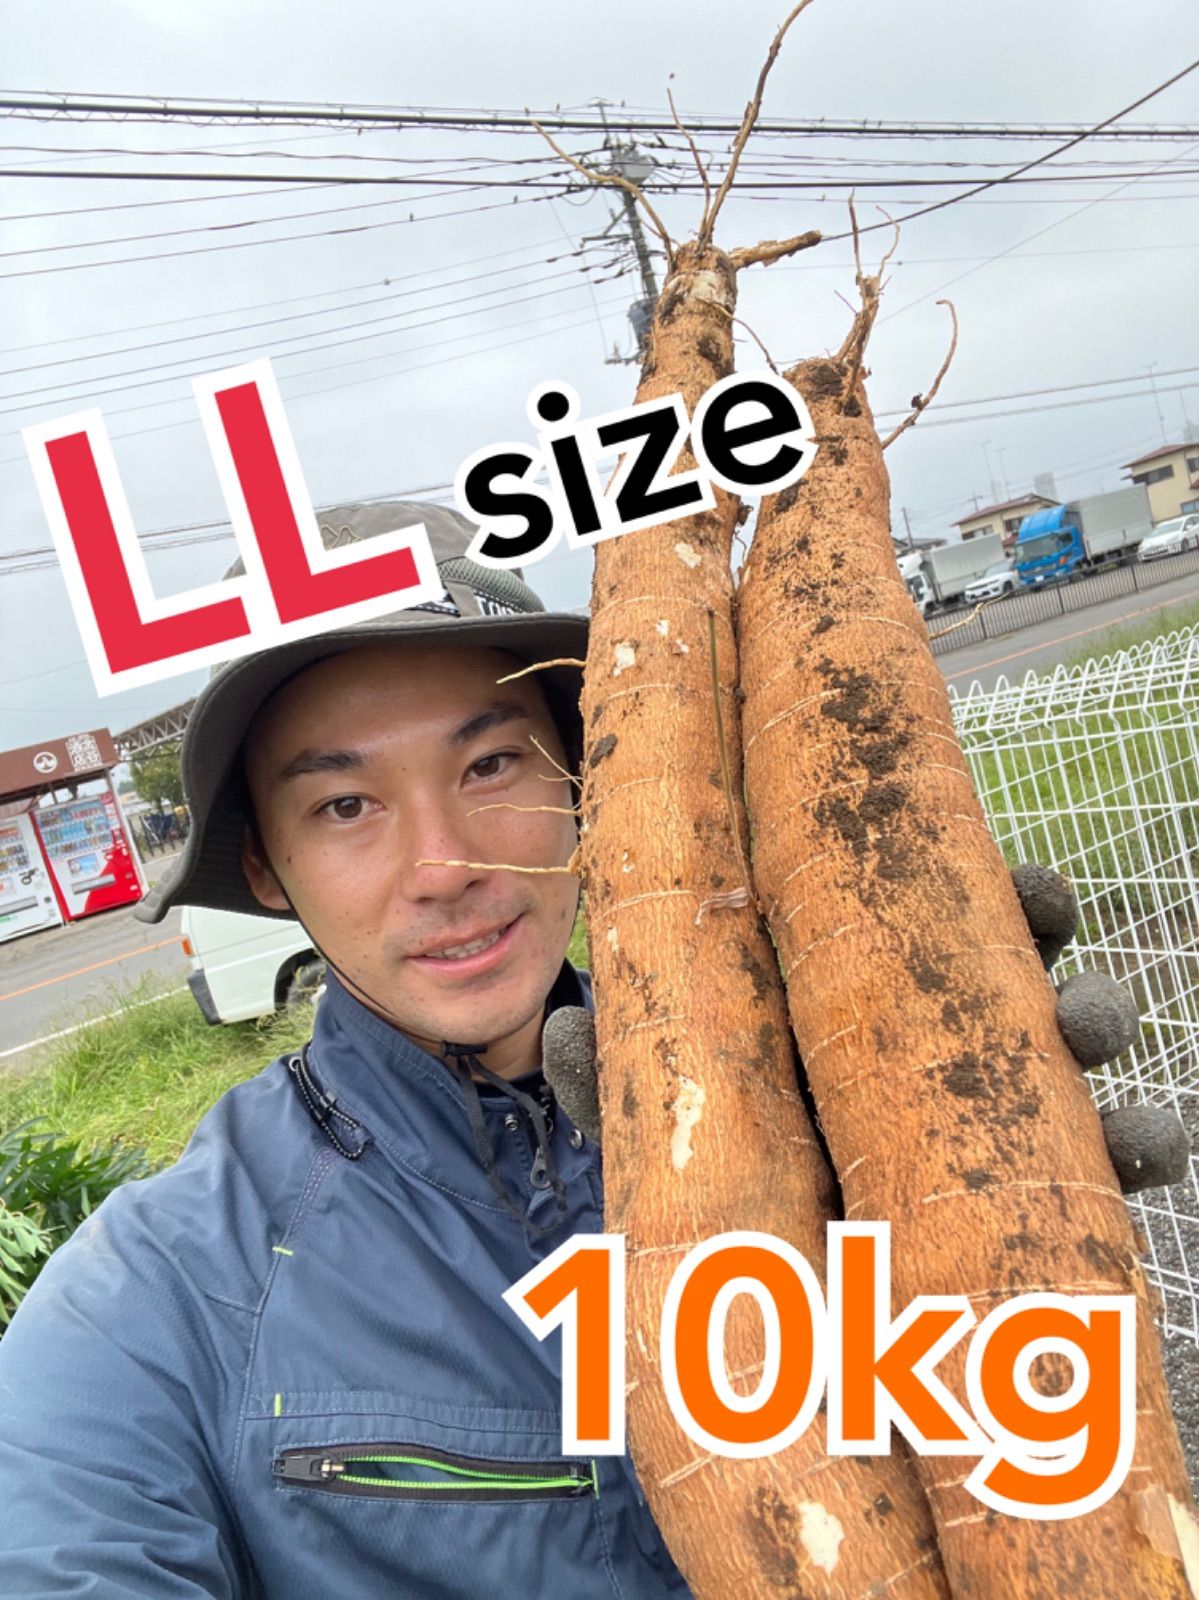 BIG SIZE yuca mandioca cassava 10kg - 野菜